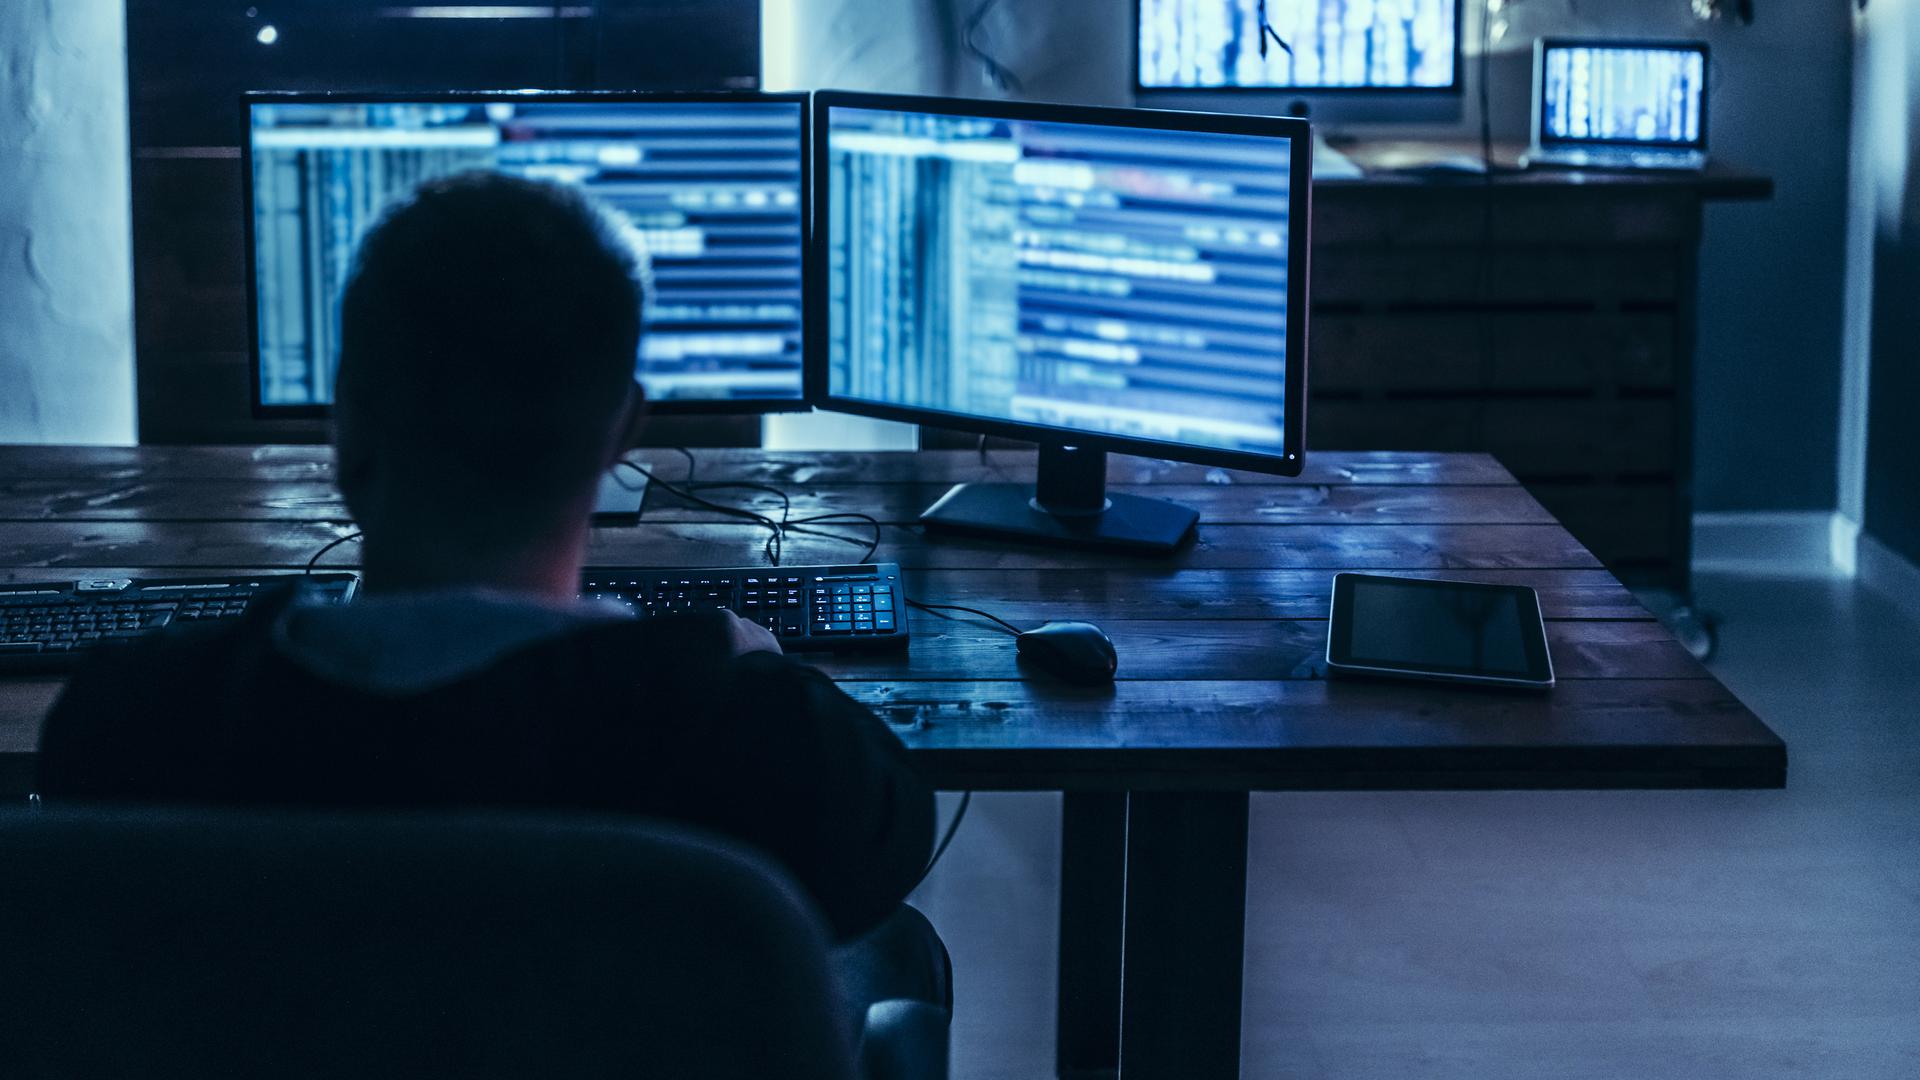 Numa mensagem à empresa Vivalia, o grupo de hackers explicou que conseguiu roubar nada menos que 400 gigabytes de dados confidenciais.